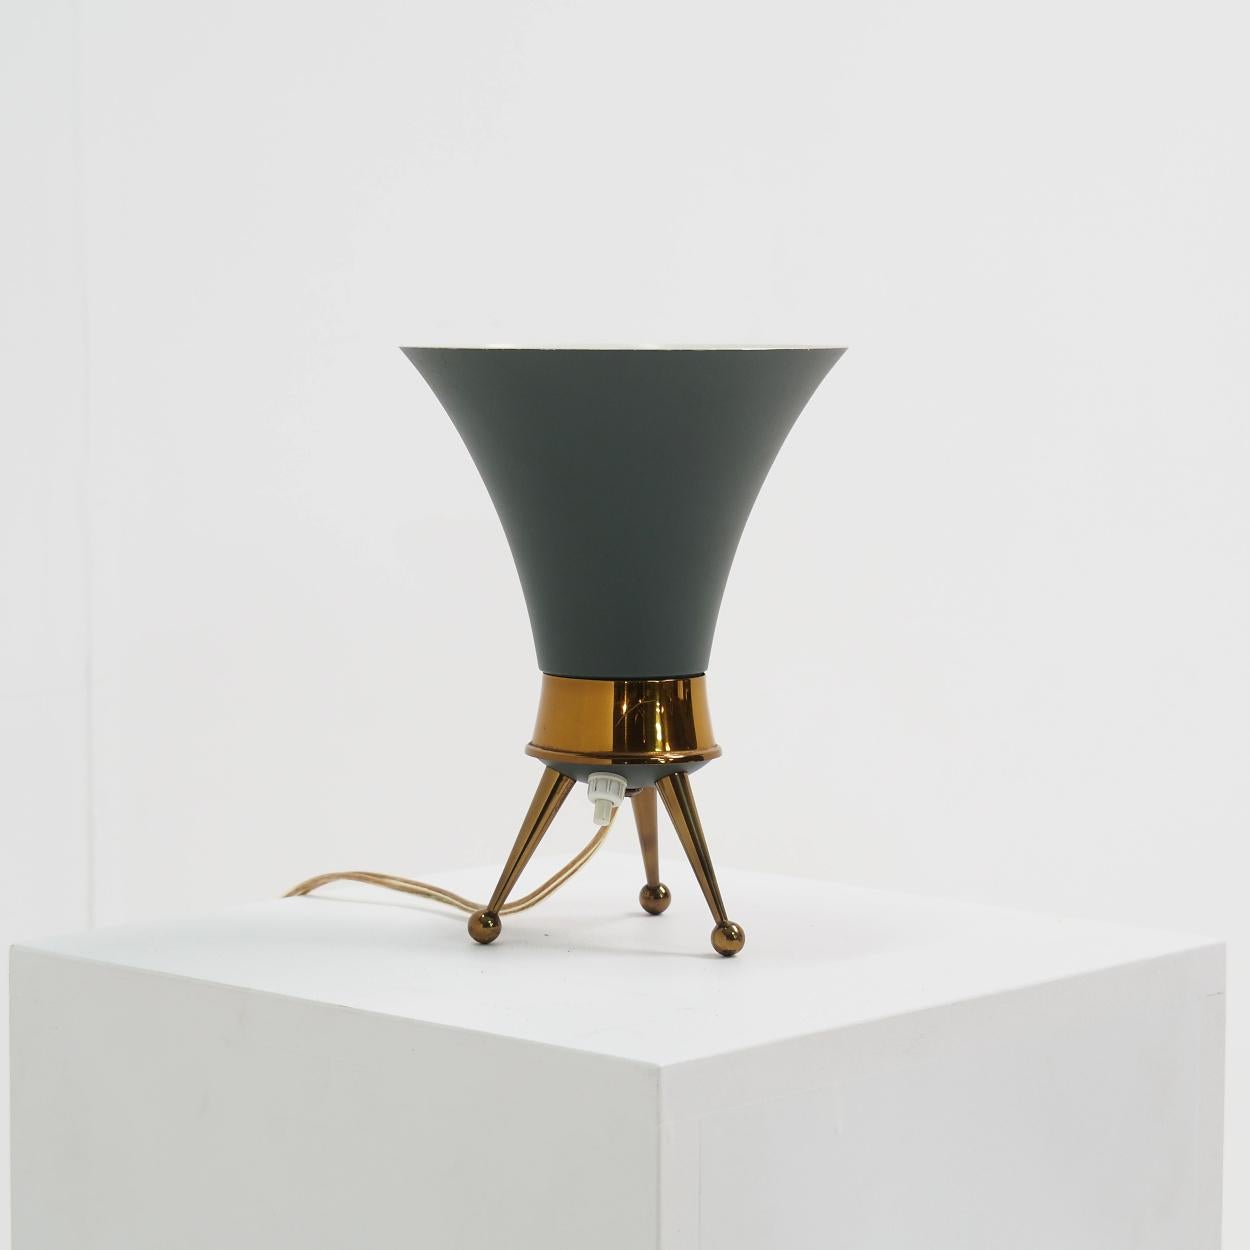 Charmante petite lampe de table ou de chevet des années 1950 attribuée à la société suisse BAG Turgi.

La lampe est en métal laqué vert et repose sur un trépied en laiton.

Il est dans un état proche de l'état neuf et comporte encore toutes les